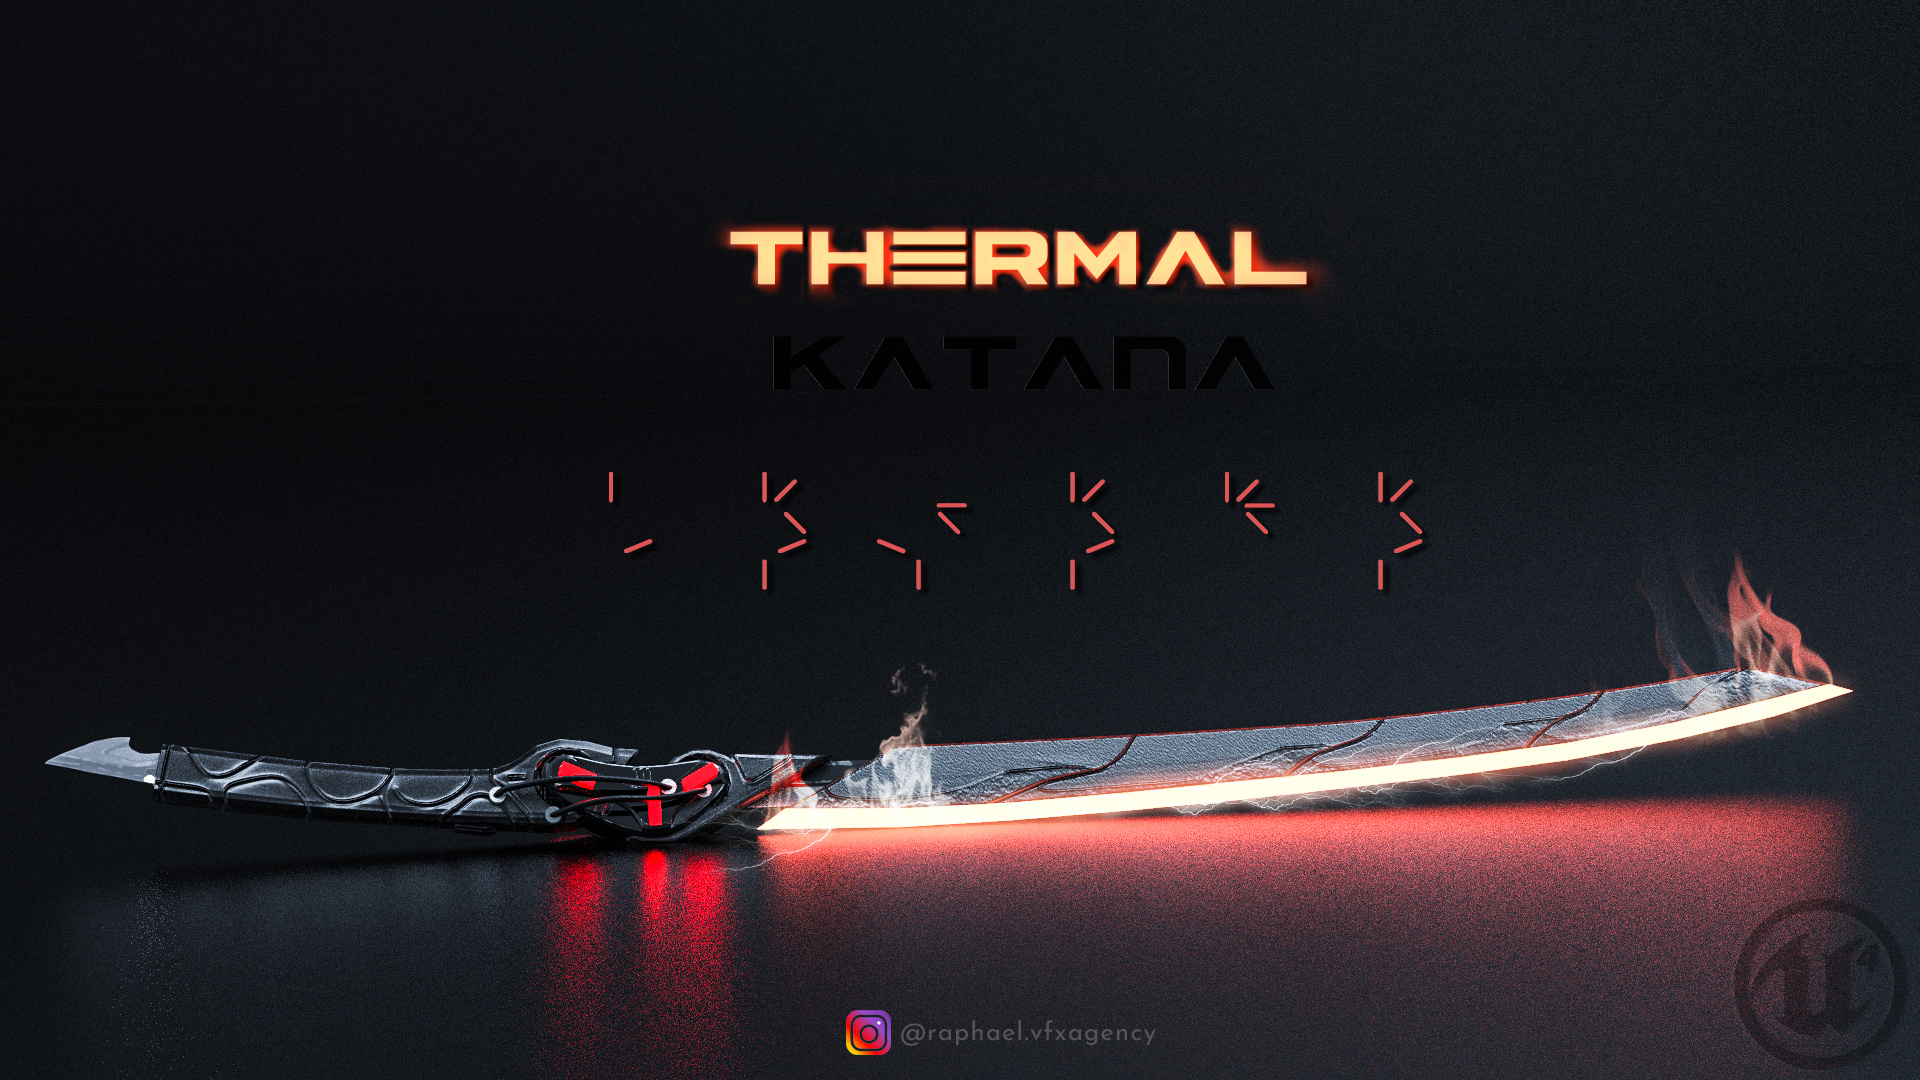 thermal katana by rapha x